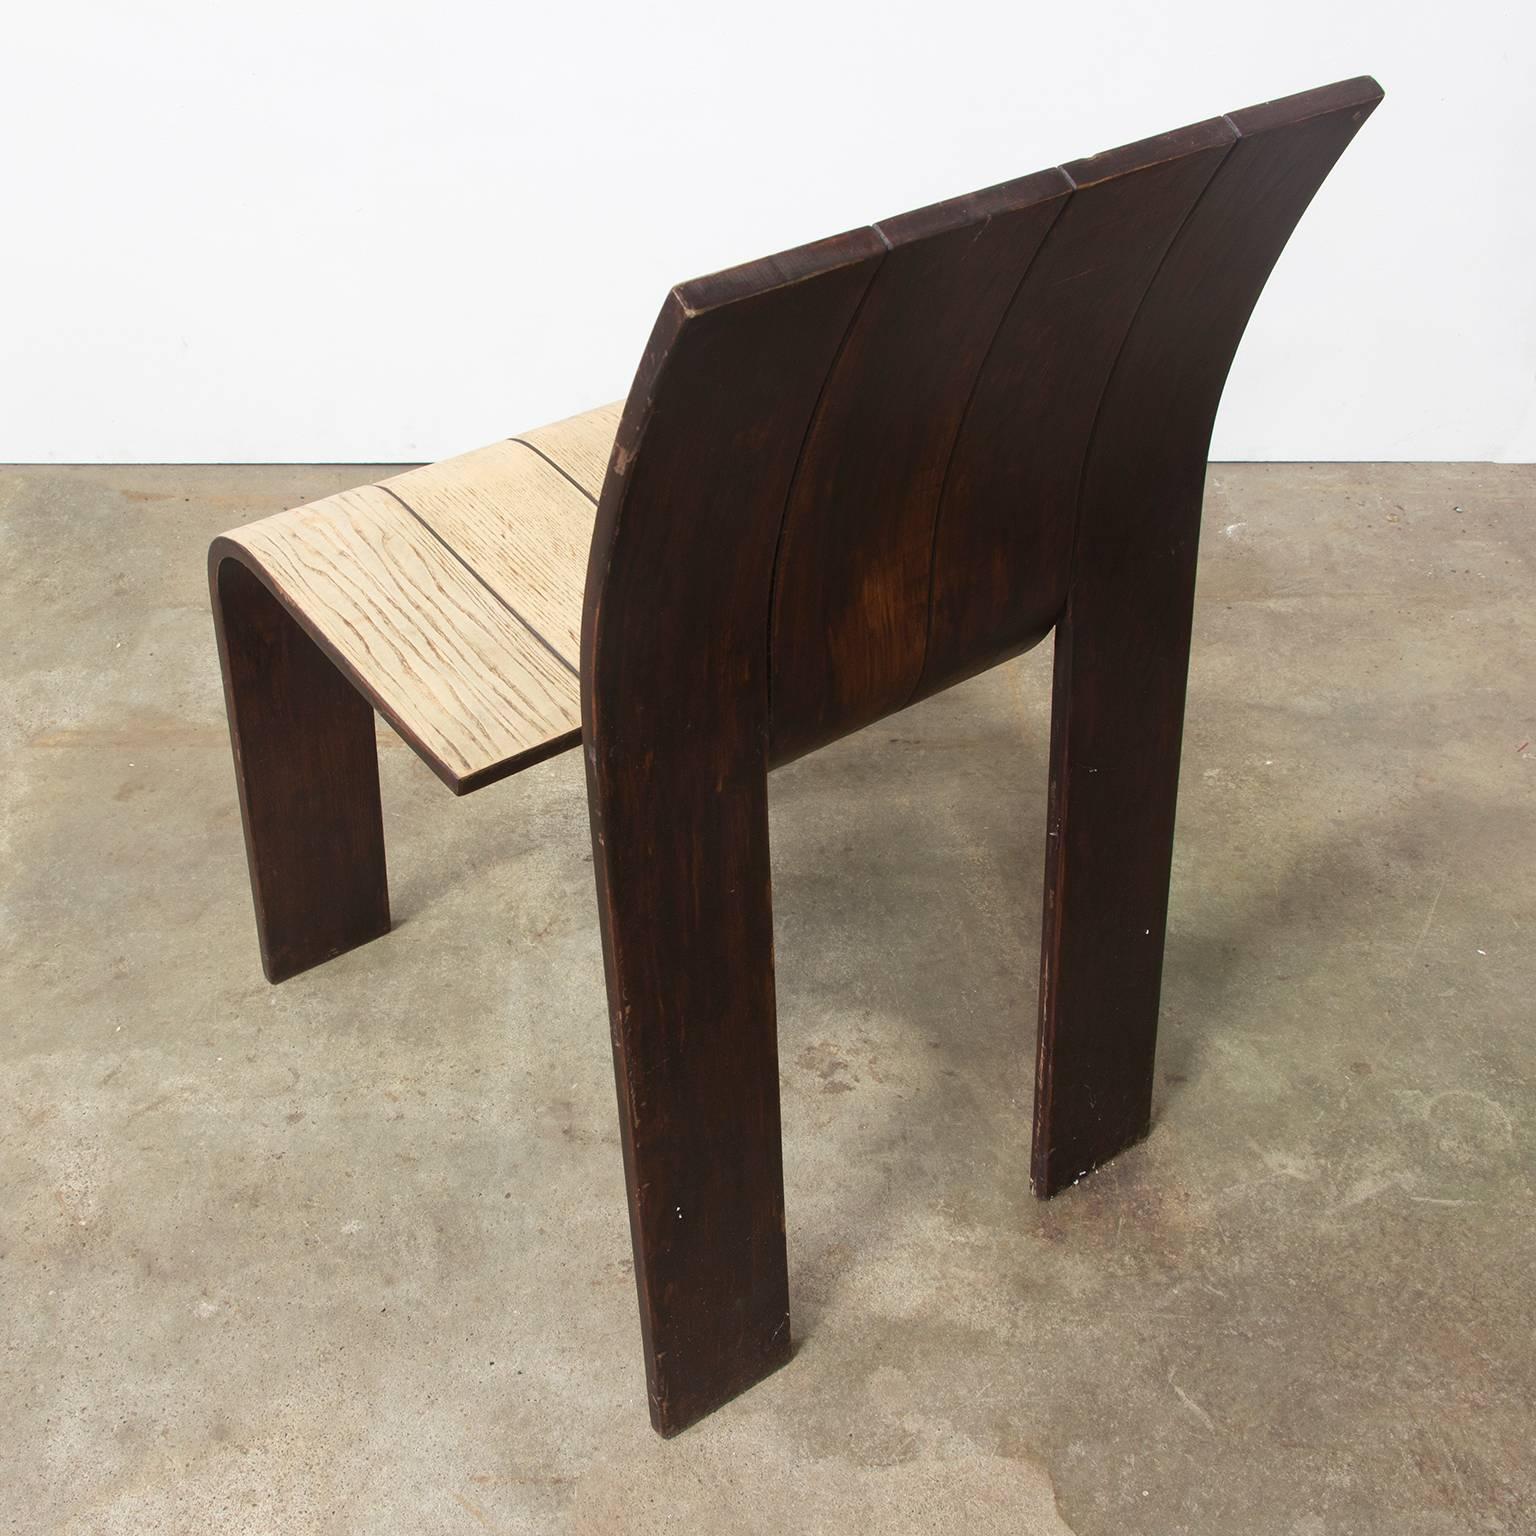 1974, Gijs Bakker, Castelijn, teilweise lackierter stapelbarer Stuhl mit gebogenen Holzstreifen, 1974 (Ende des 20. Jahrhunderts)